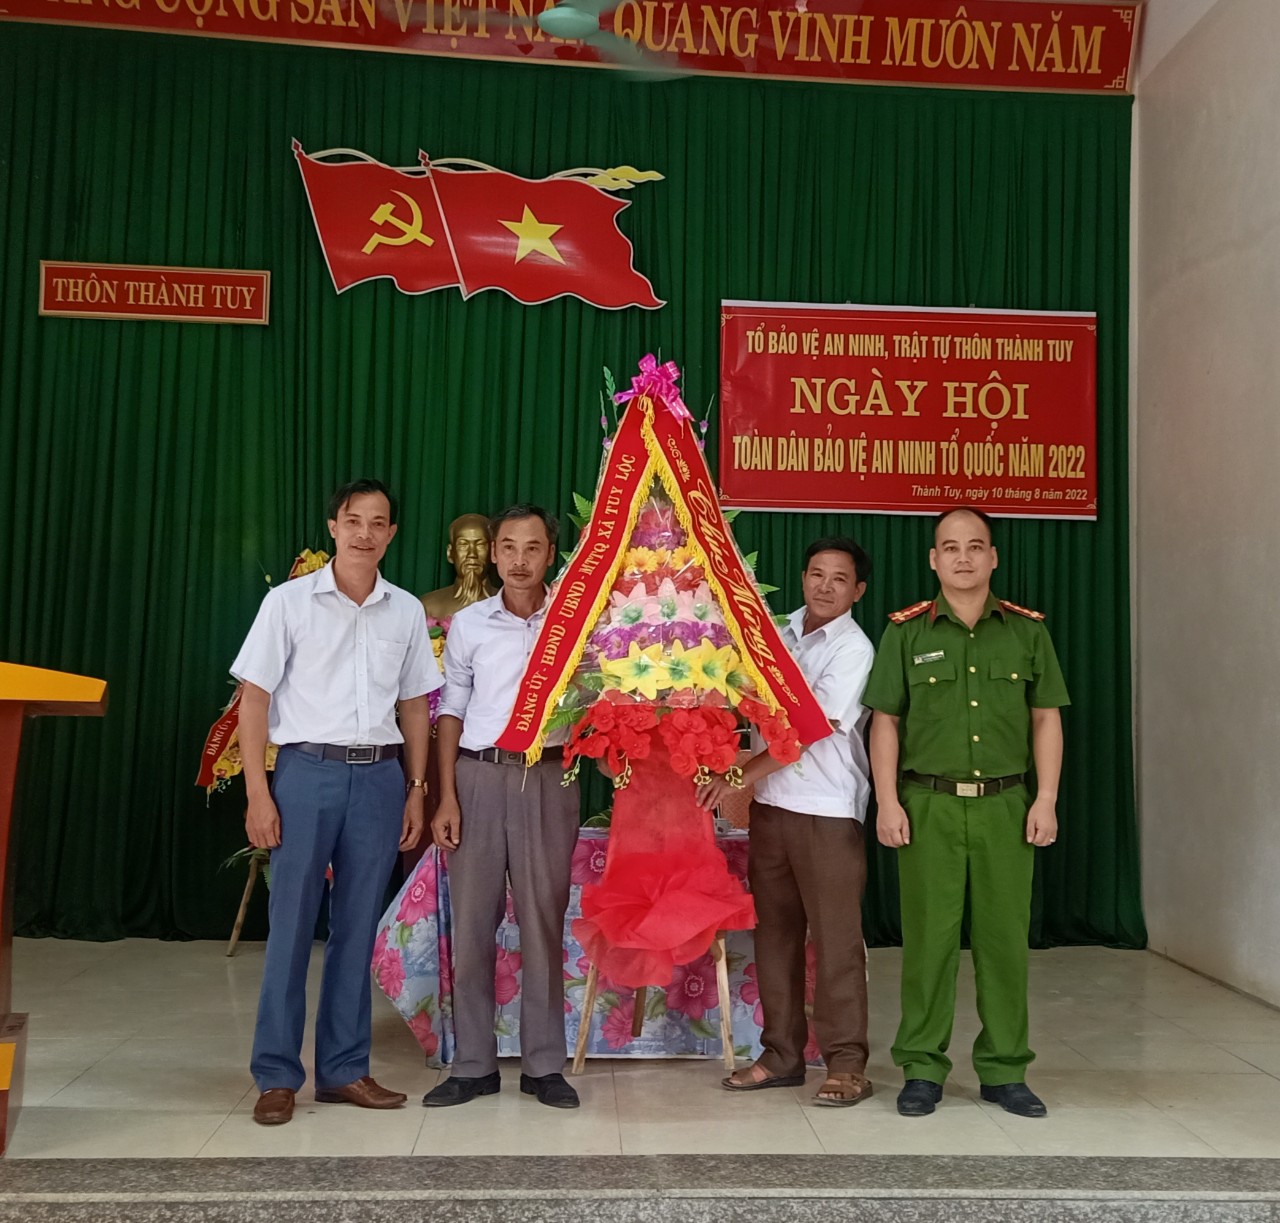 Thôn Thành Tuy xã Tuy Lộc  tổ chức hội nghị "NGÀY HỘI TOÀN DÂN BẢO VỆ AN NINH TỔ QUỐC NĂM 2022"